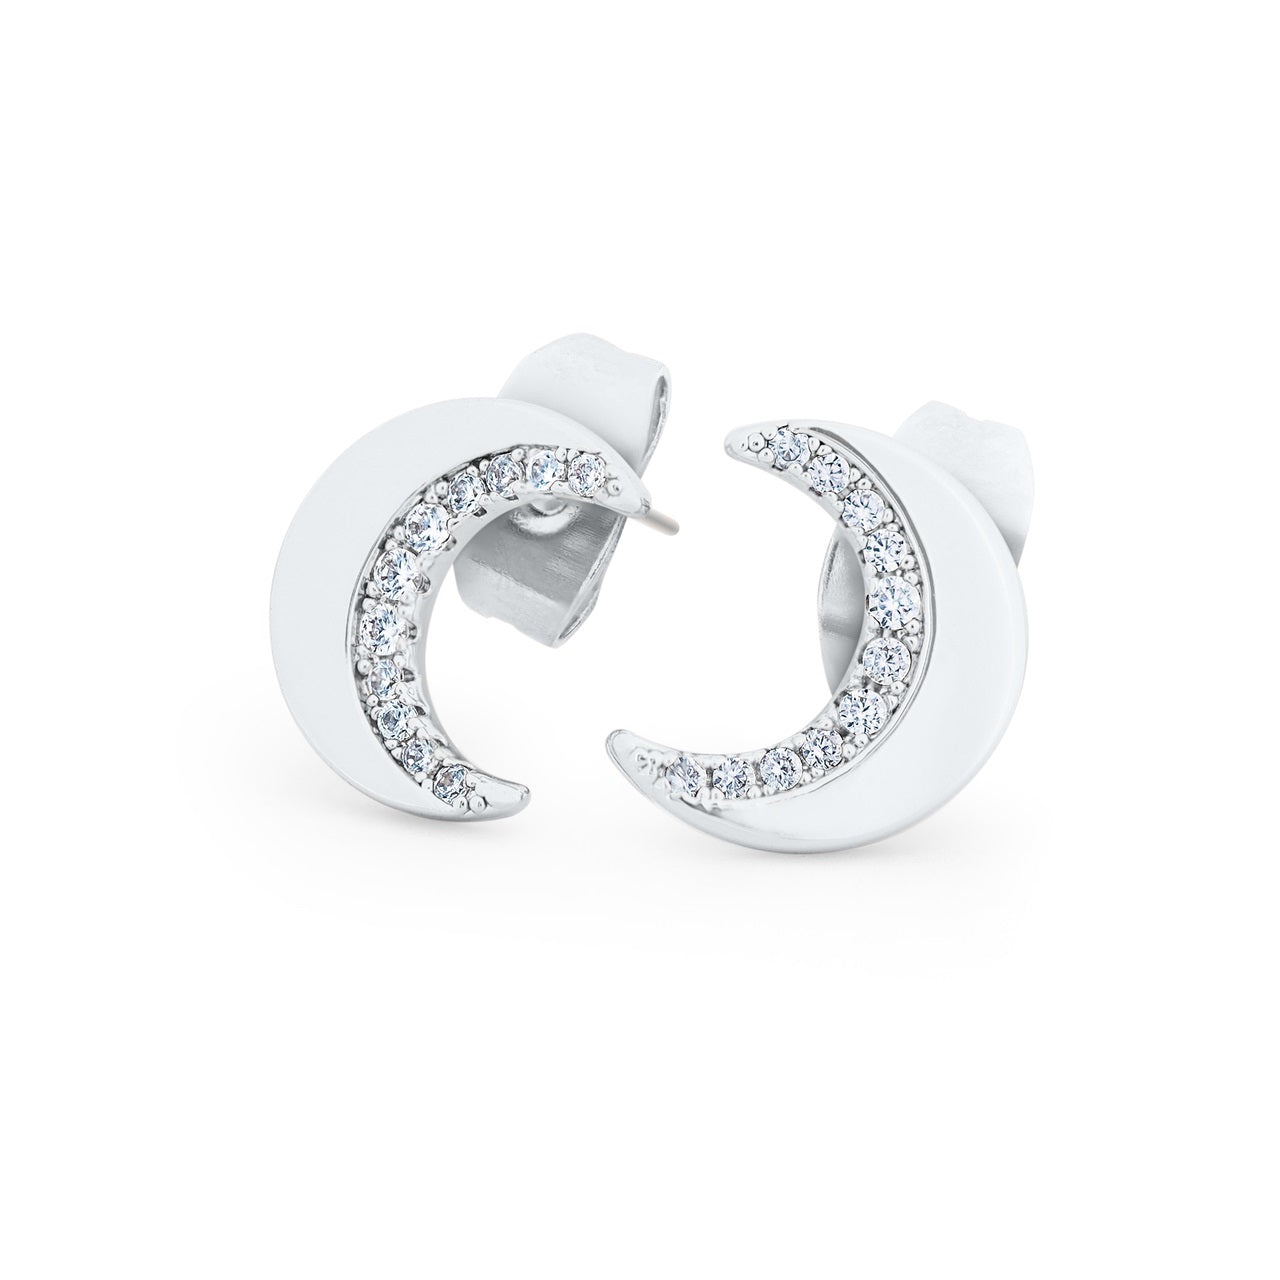 Tipperary Crystal Half Moon Stud Silver Earrings